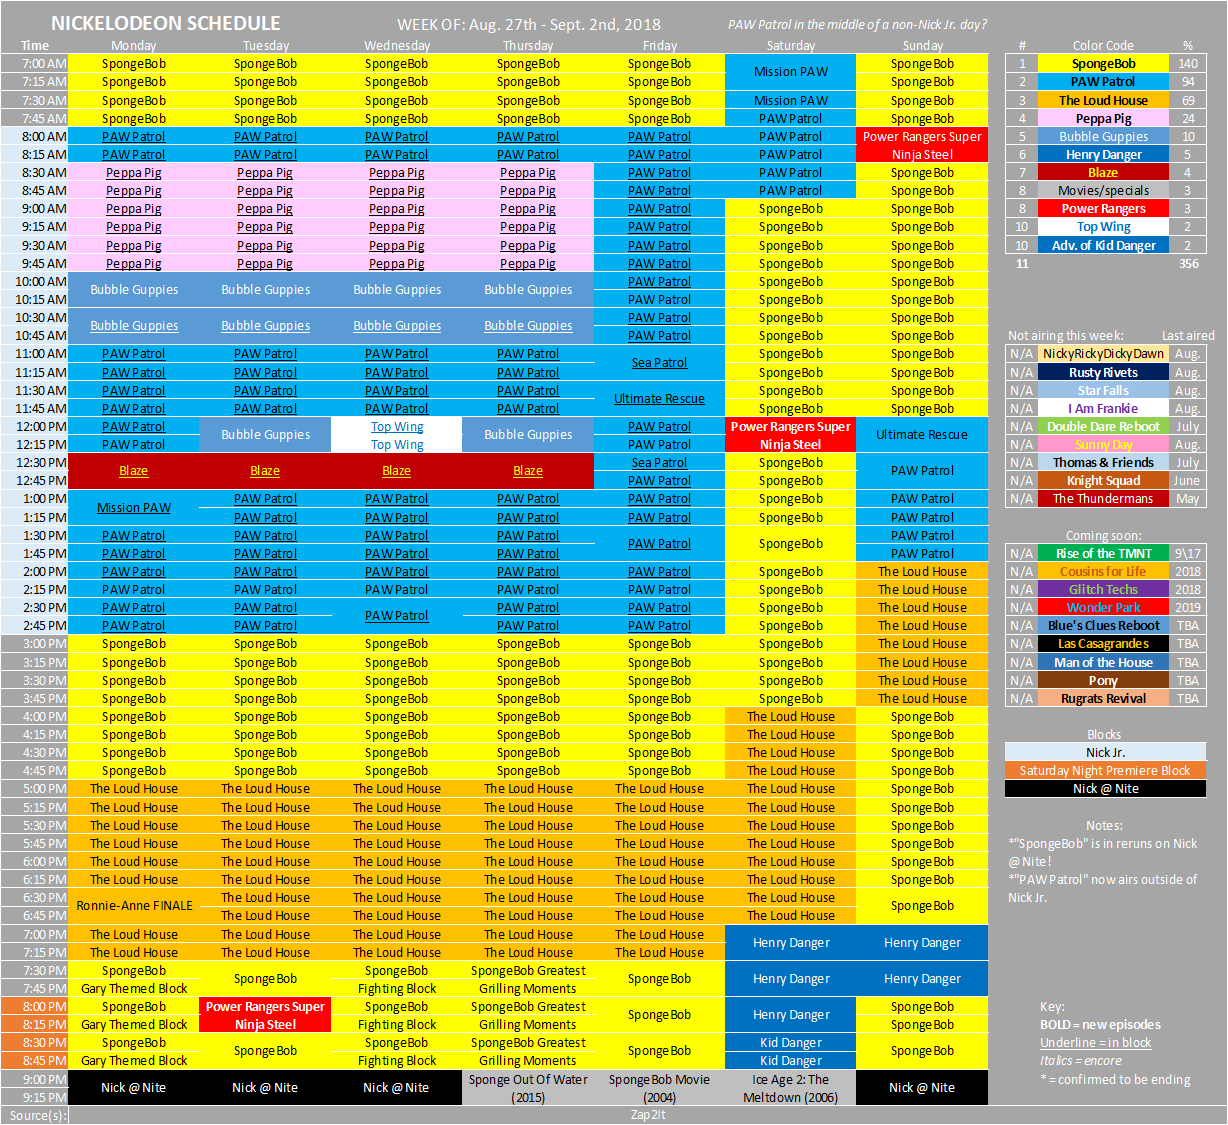 Nicktoons Network Schedule